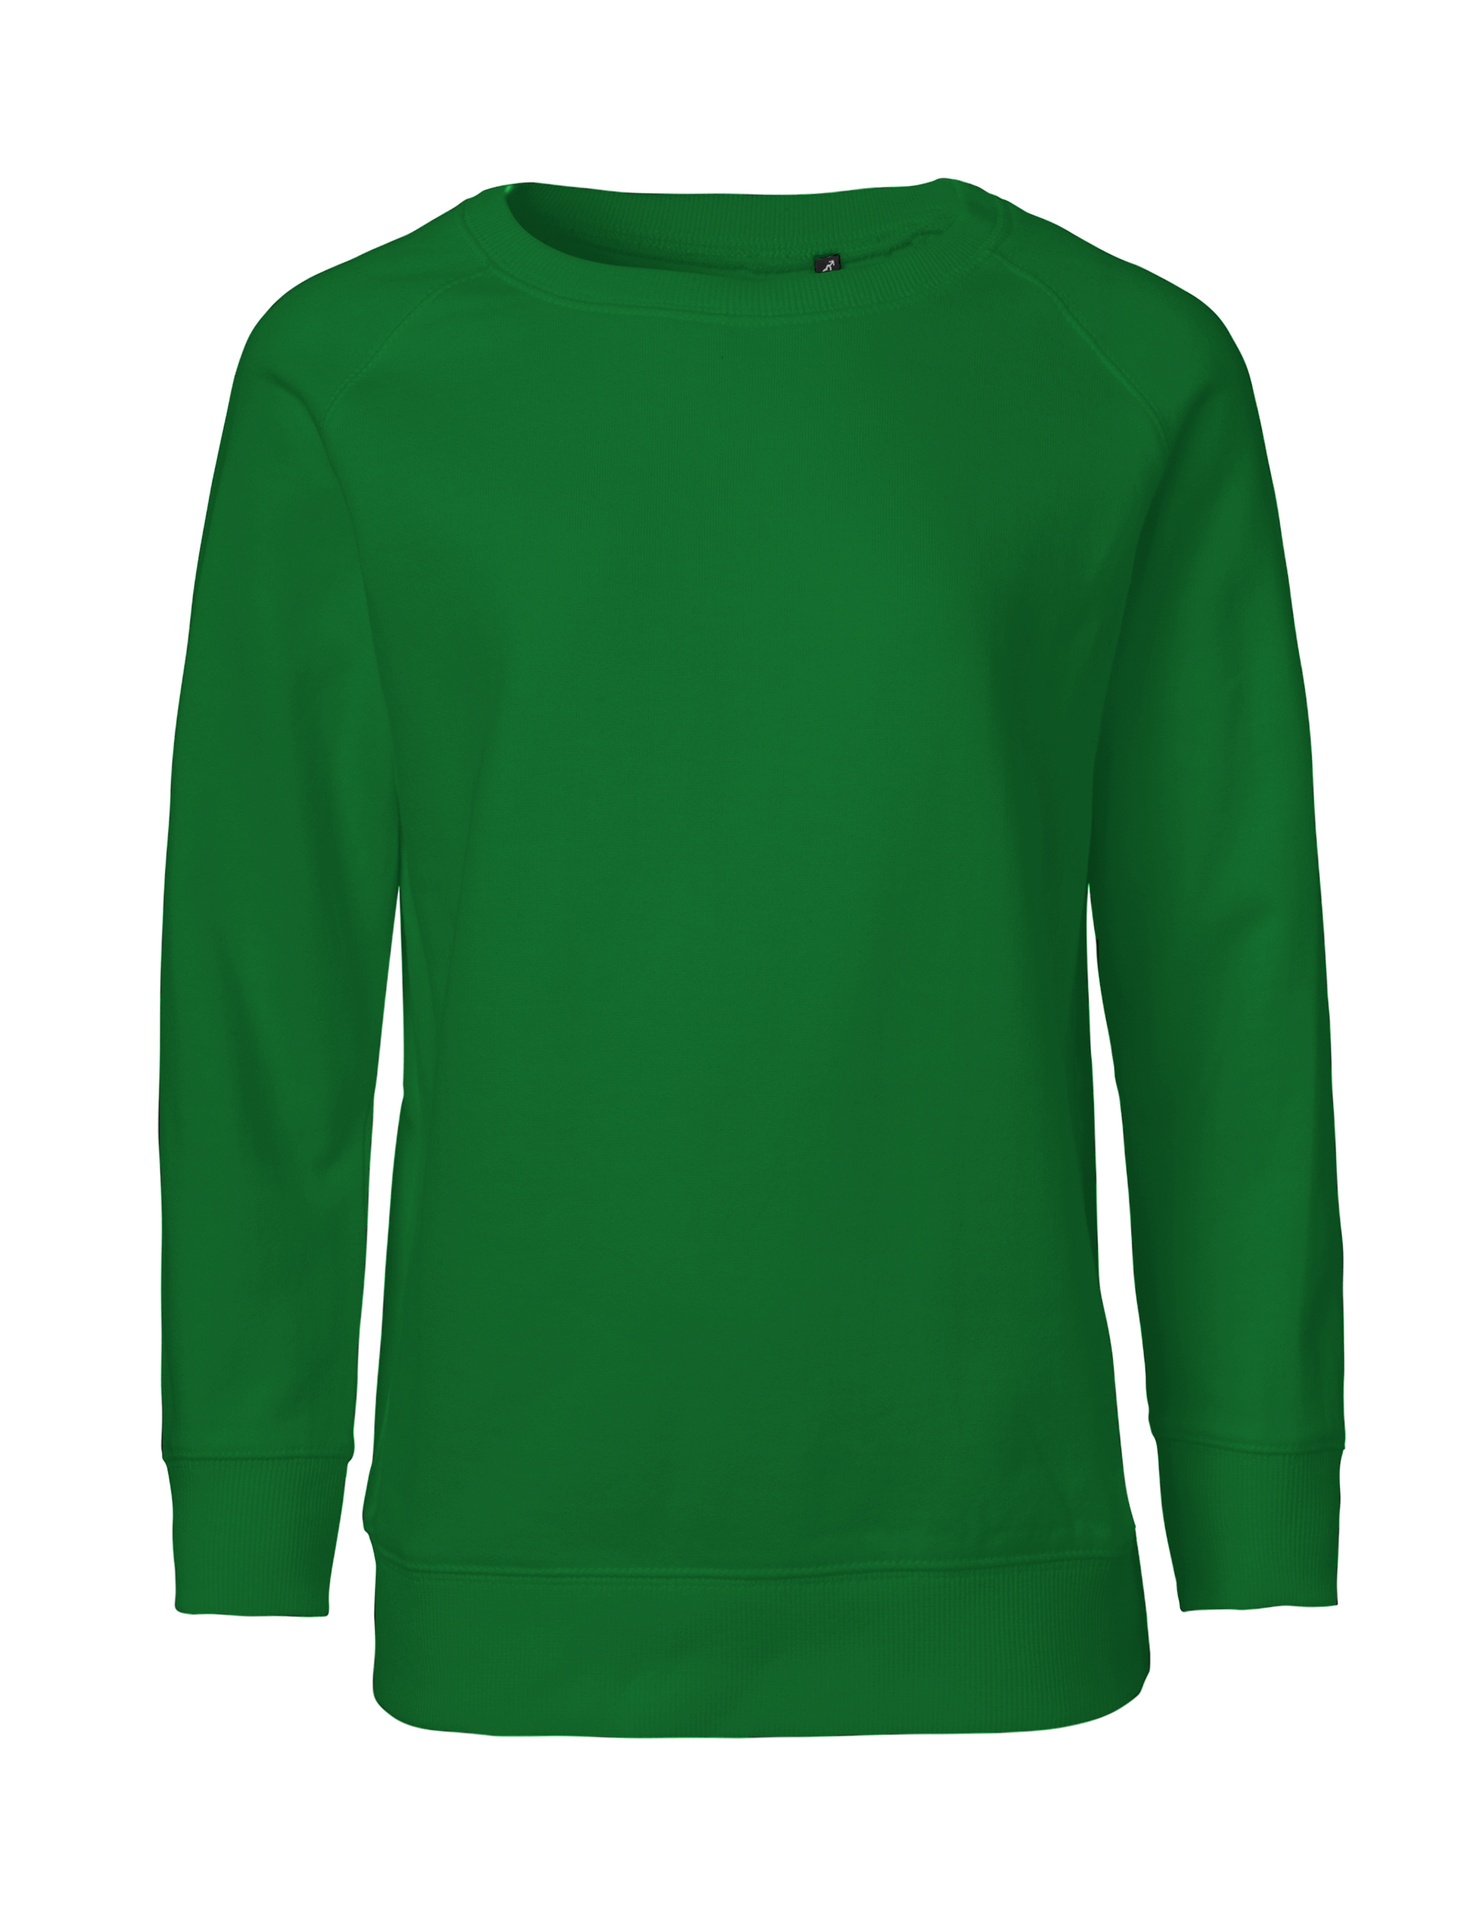 [PR/05548] Kids Sweatshirt (Green 67, 116/122 cm)